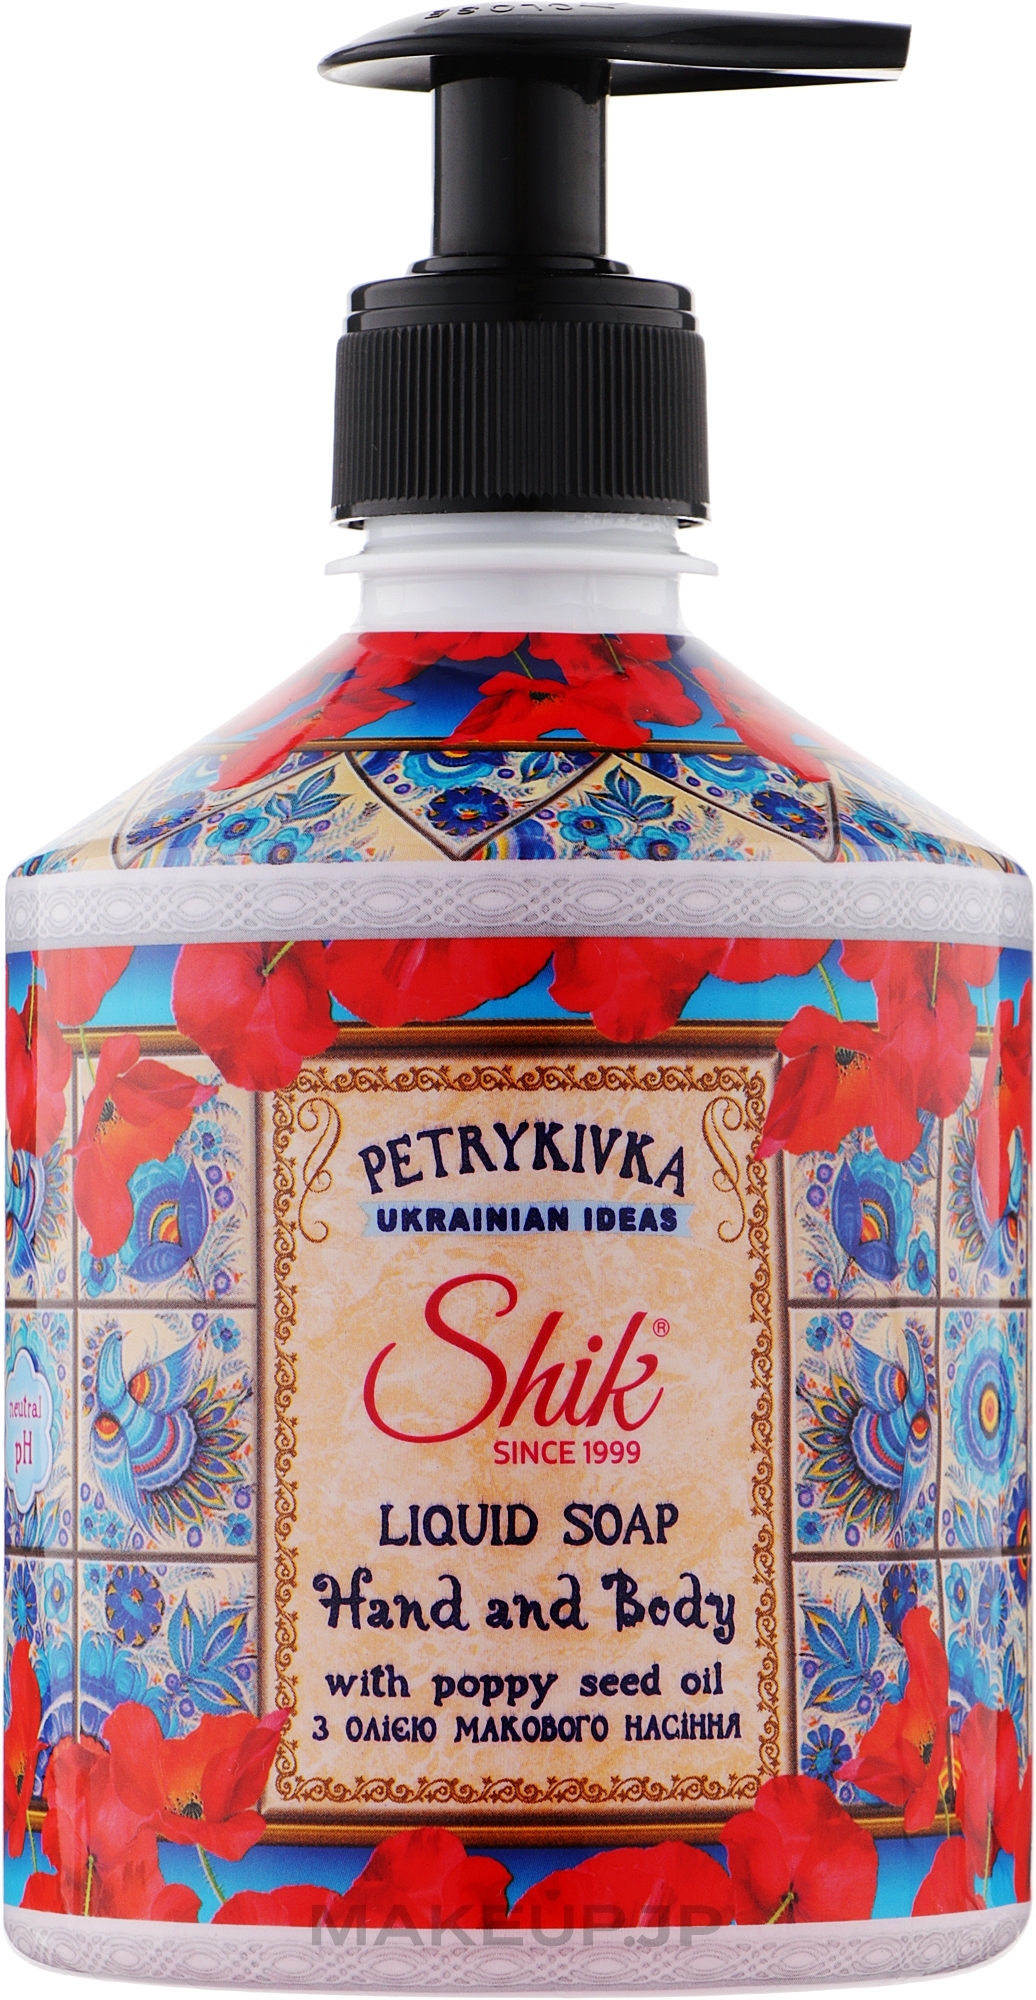 Liquid Soap with Poppy Seed Oil - Shik Petrykivka Liquid Soap Hand and Body — photo 500 ml